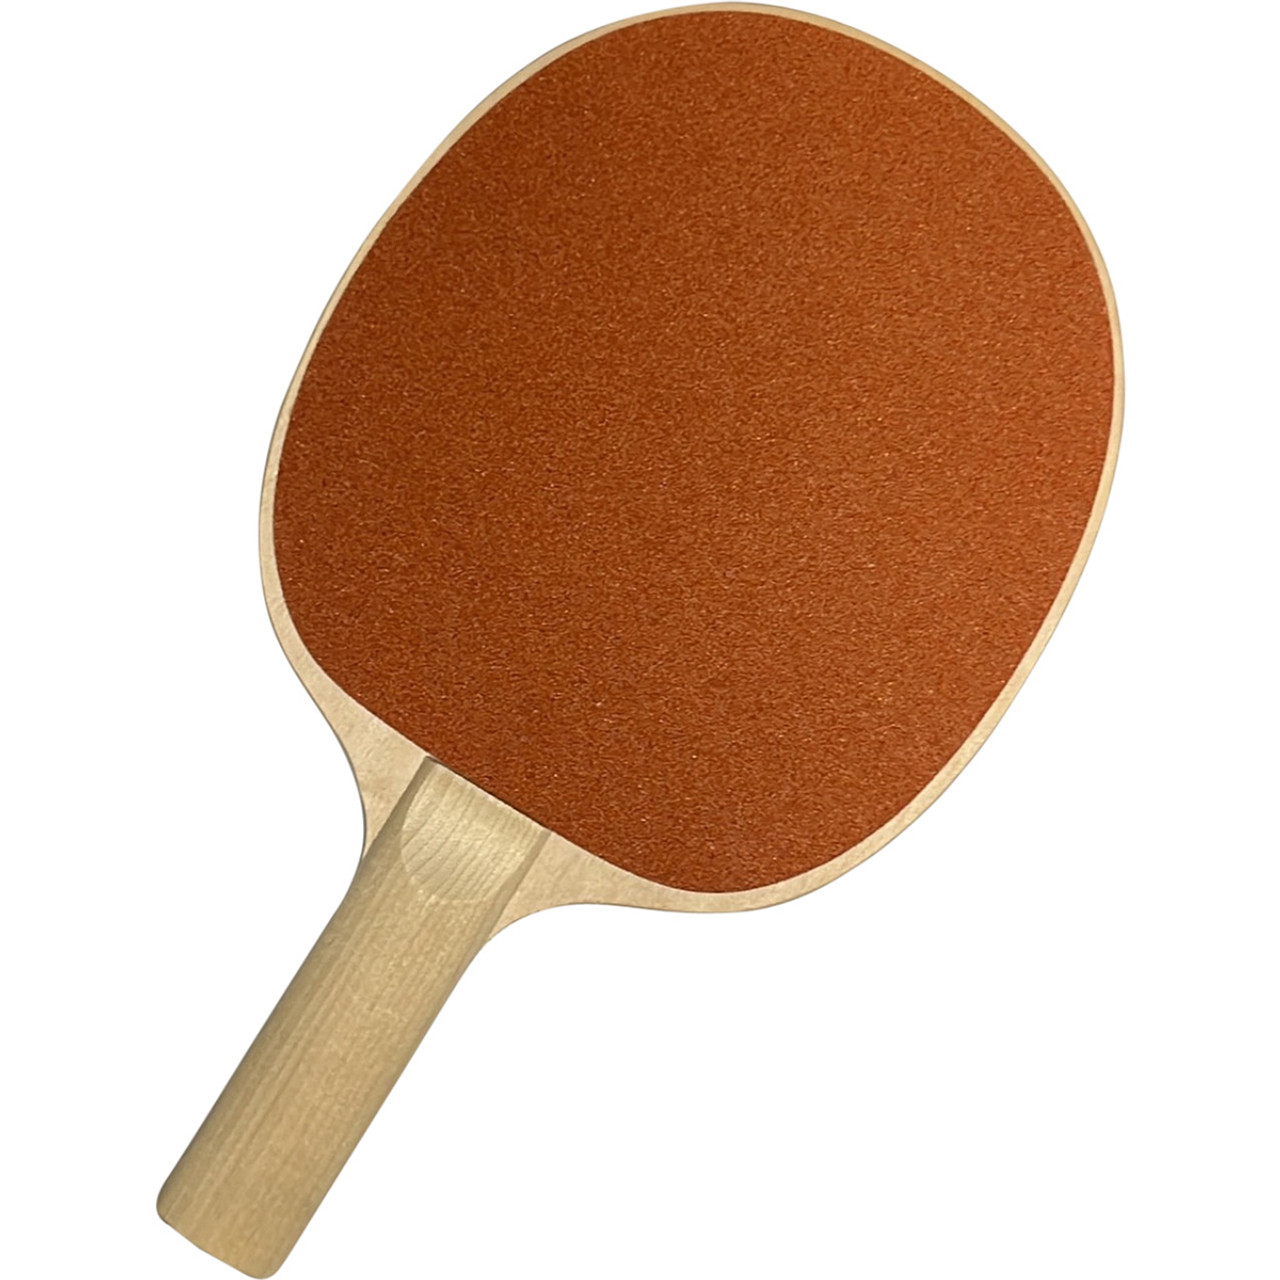 Sandpaper face Table Tennis Bats | Marchants.com